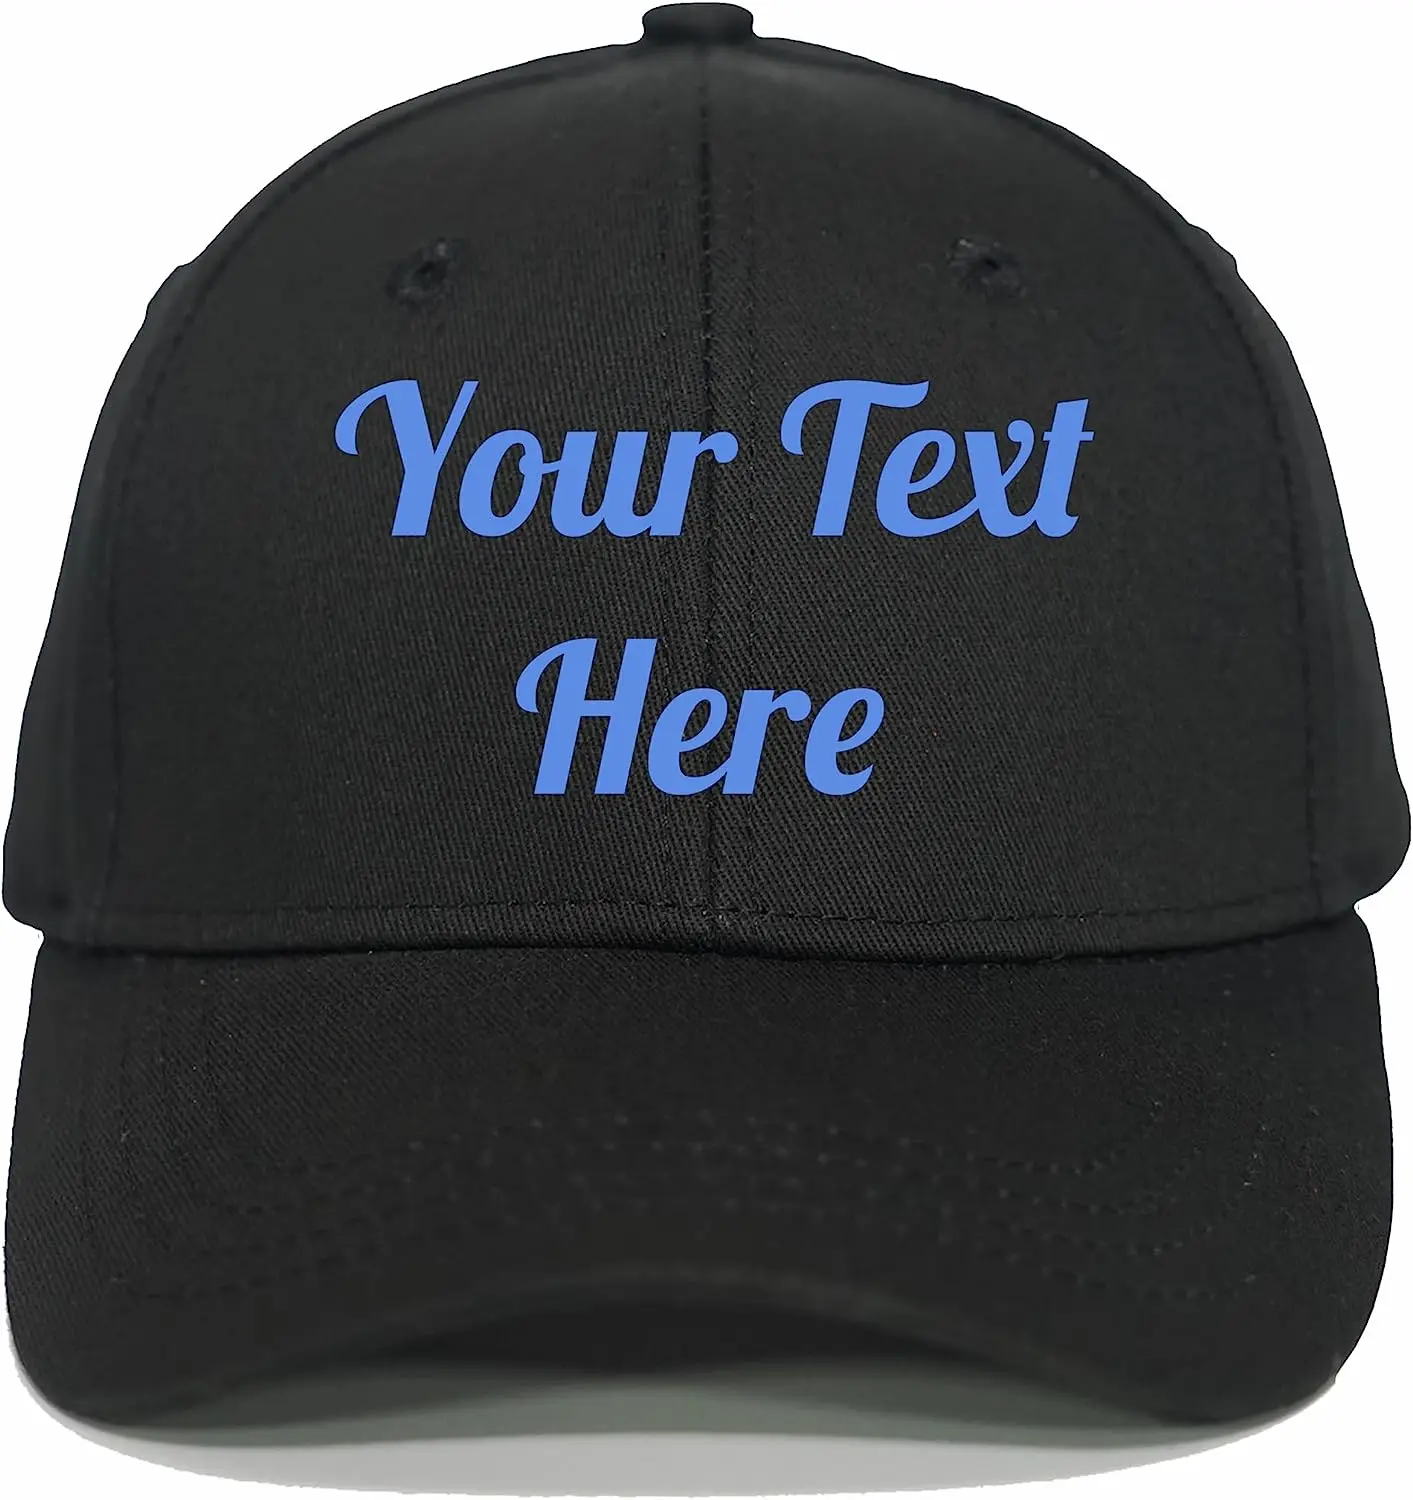 

Индивидуальная бейсболка для мужчин и женщин, индивидуальные подарочные шляпы с вашим текстом